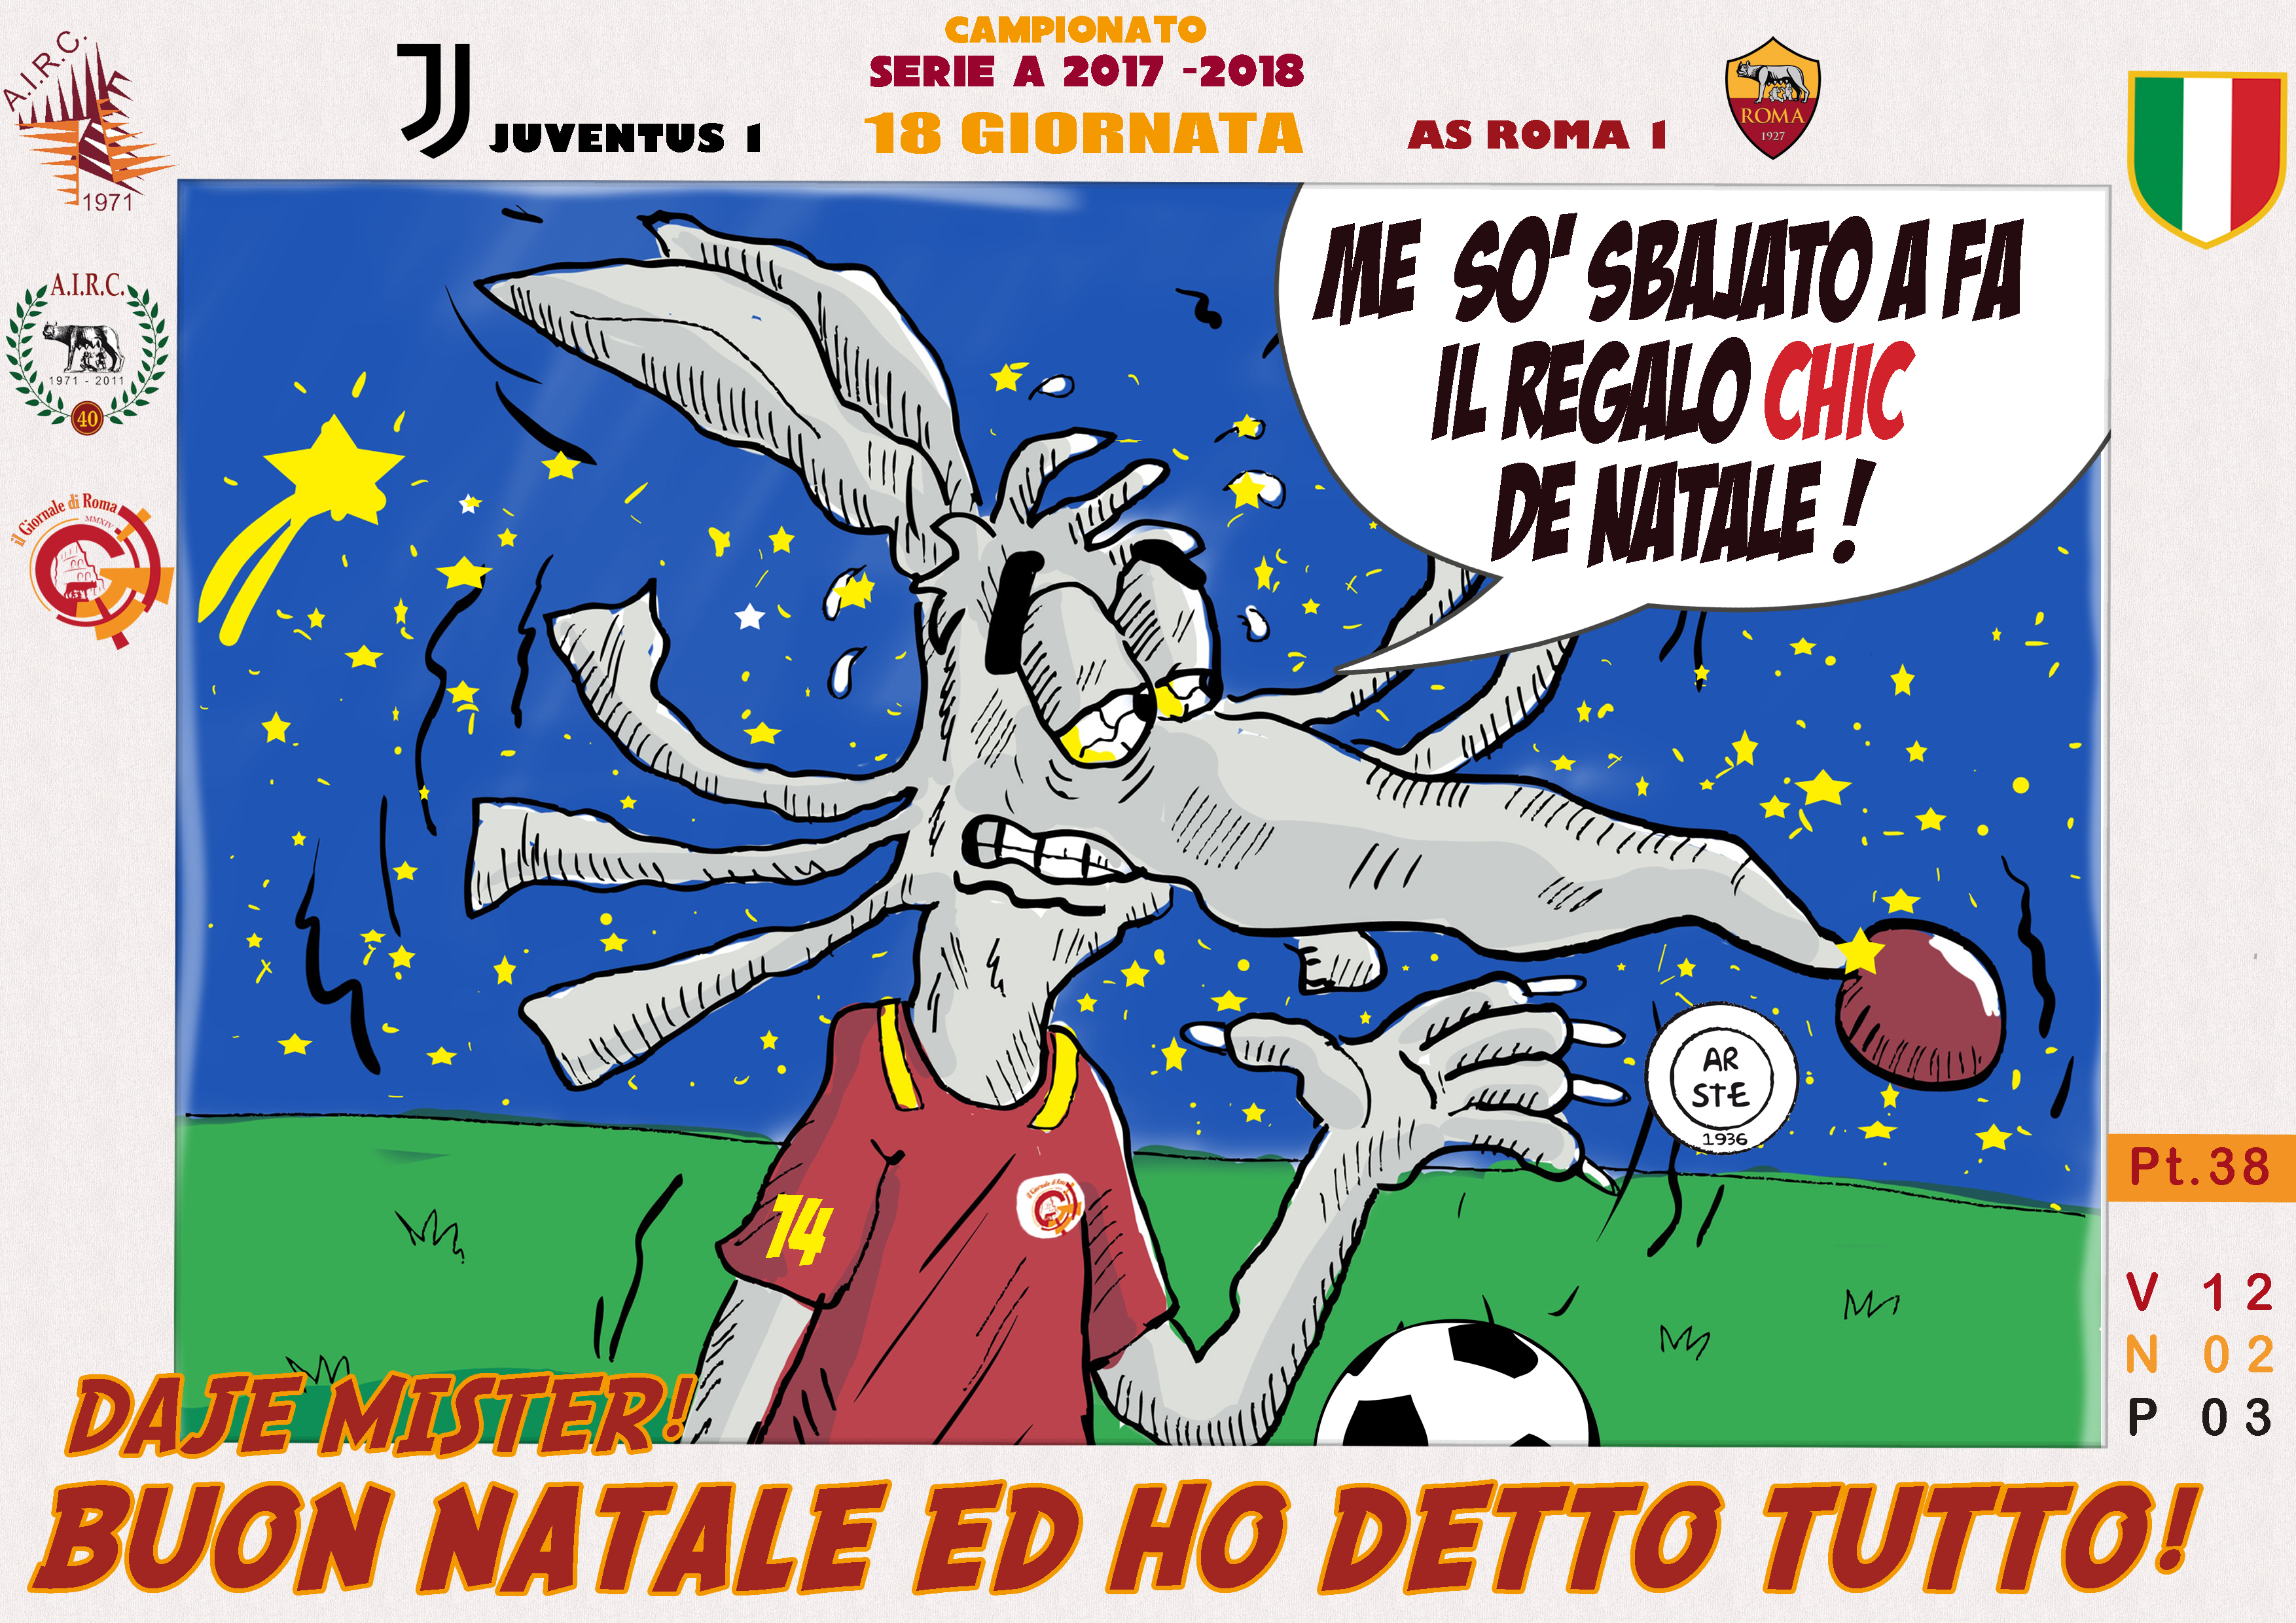 As Roma Buon Natale.Buon Natale E Ho Detto Tutto Associazione Italiana Roma Club